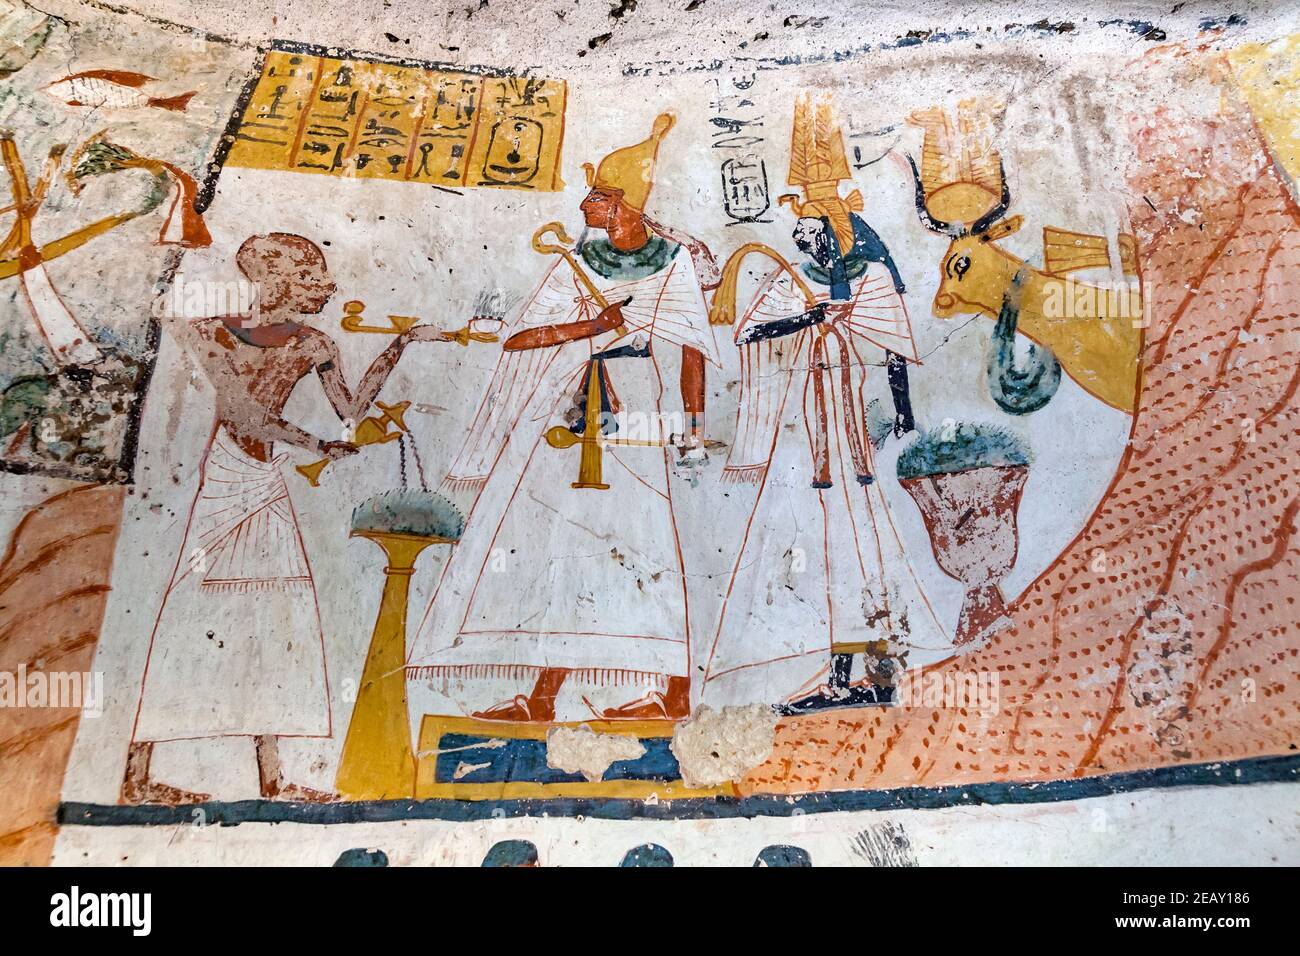 La tumba de Amenemonet, Qurnet Murai, Luxor, Egipto Foto de stock